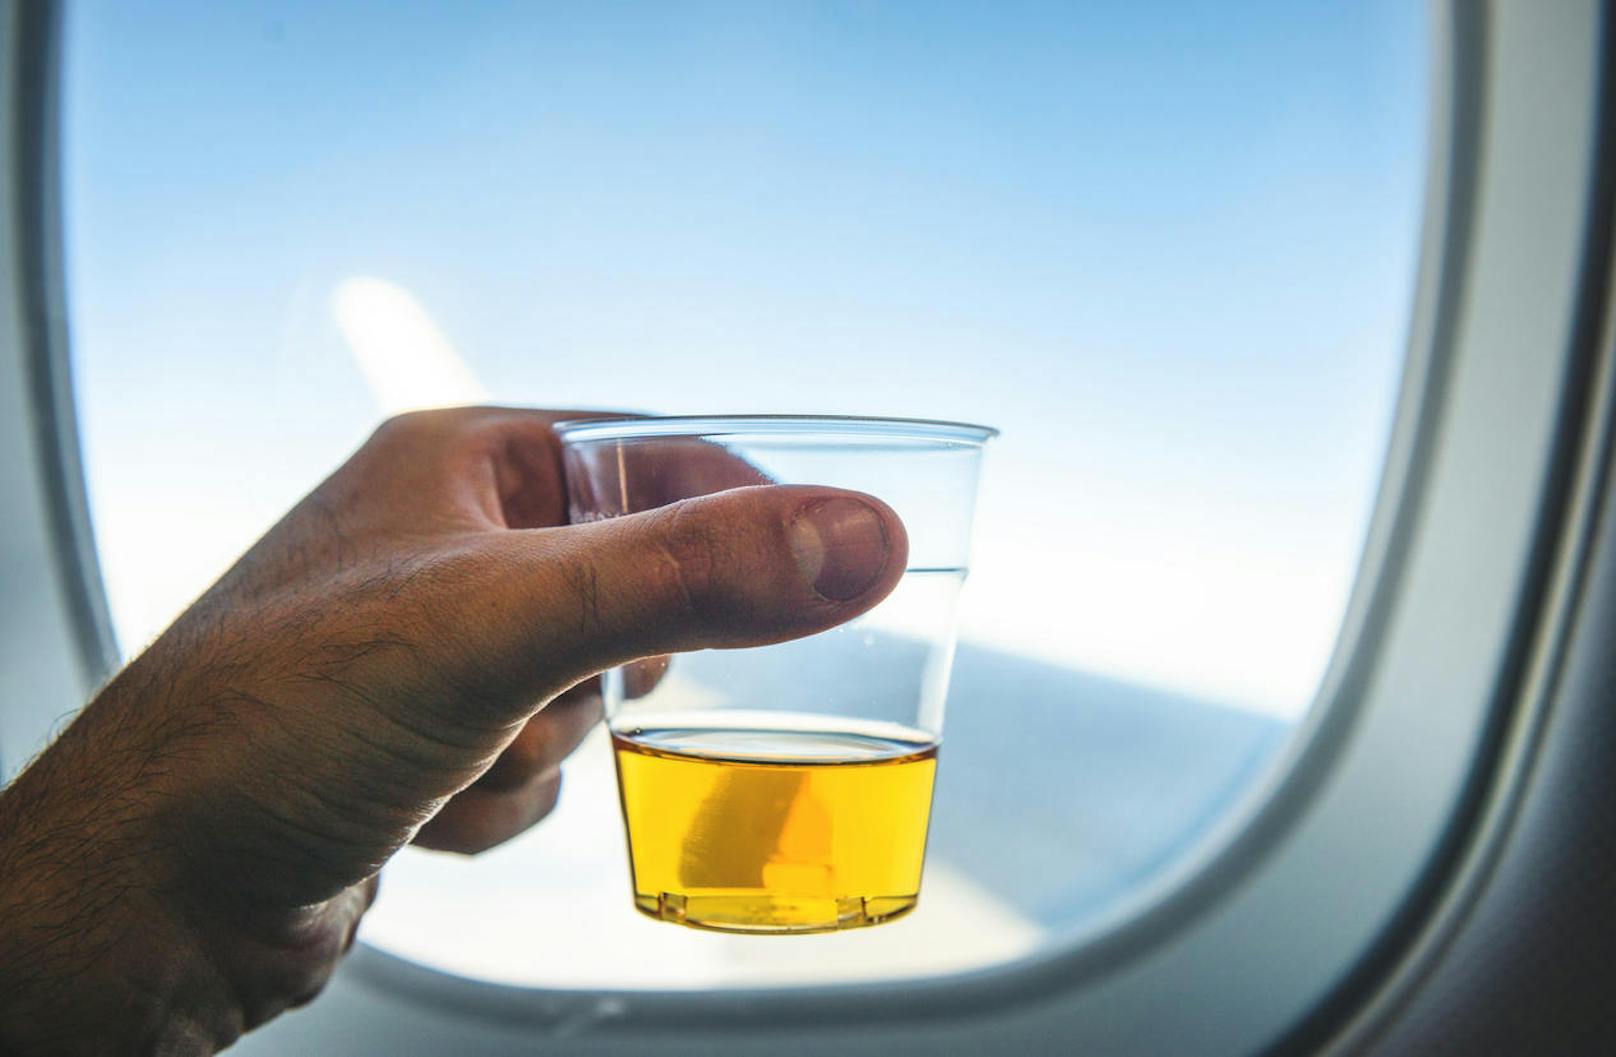 Zu den drei häufigsten Meldegründen zu wütenden Fluggästen gehören Alkohol/Drogen, Rauchen oder Beschimpfung. Wenn Sie sich an Bord einen Whisky bestellen, und zwar jedes Mal, wenn die Flugbegleiter vorbeikommen, sind Sie auf gutem Wege. Wenn Sie  dann schon lauter reden und lachen, leuchtet beim Kabinenpersonal die gelbe Ampel.